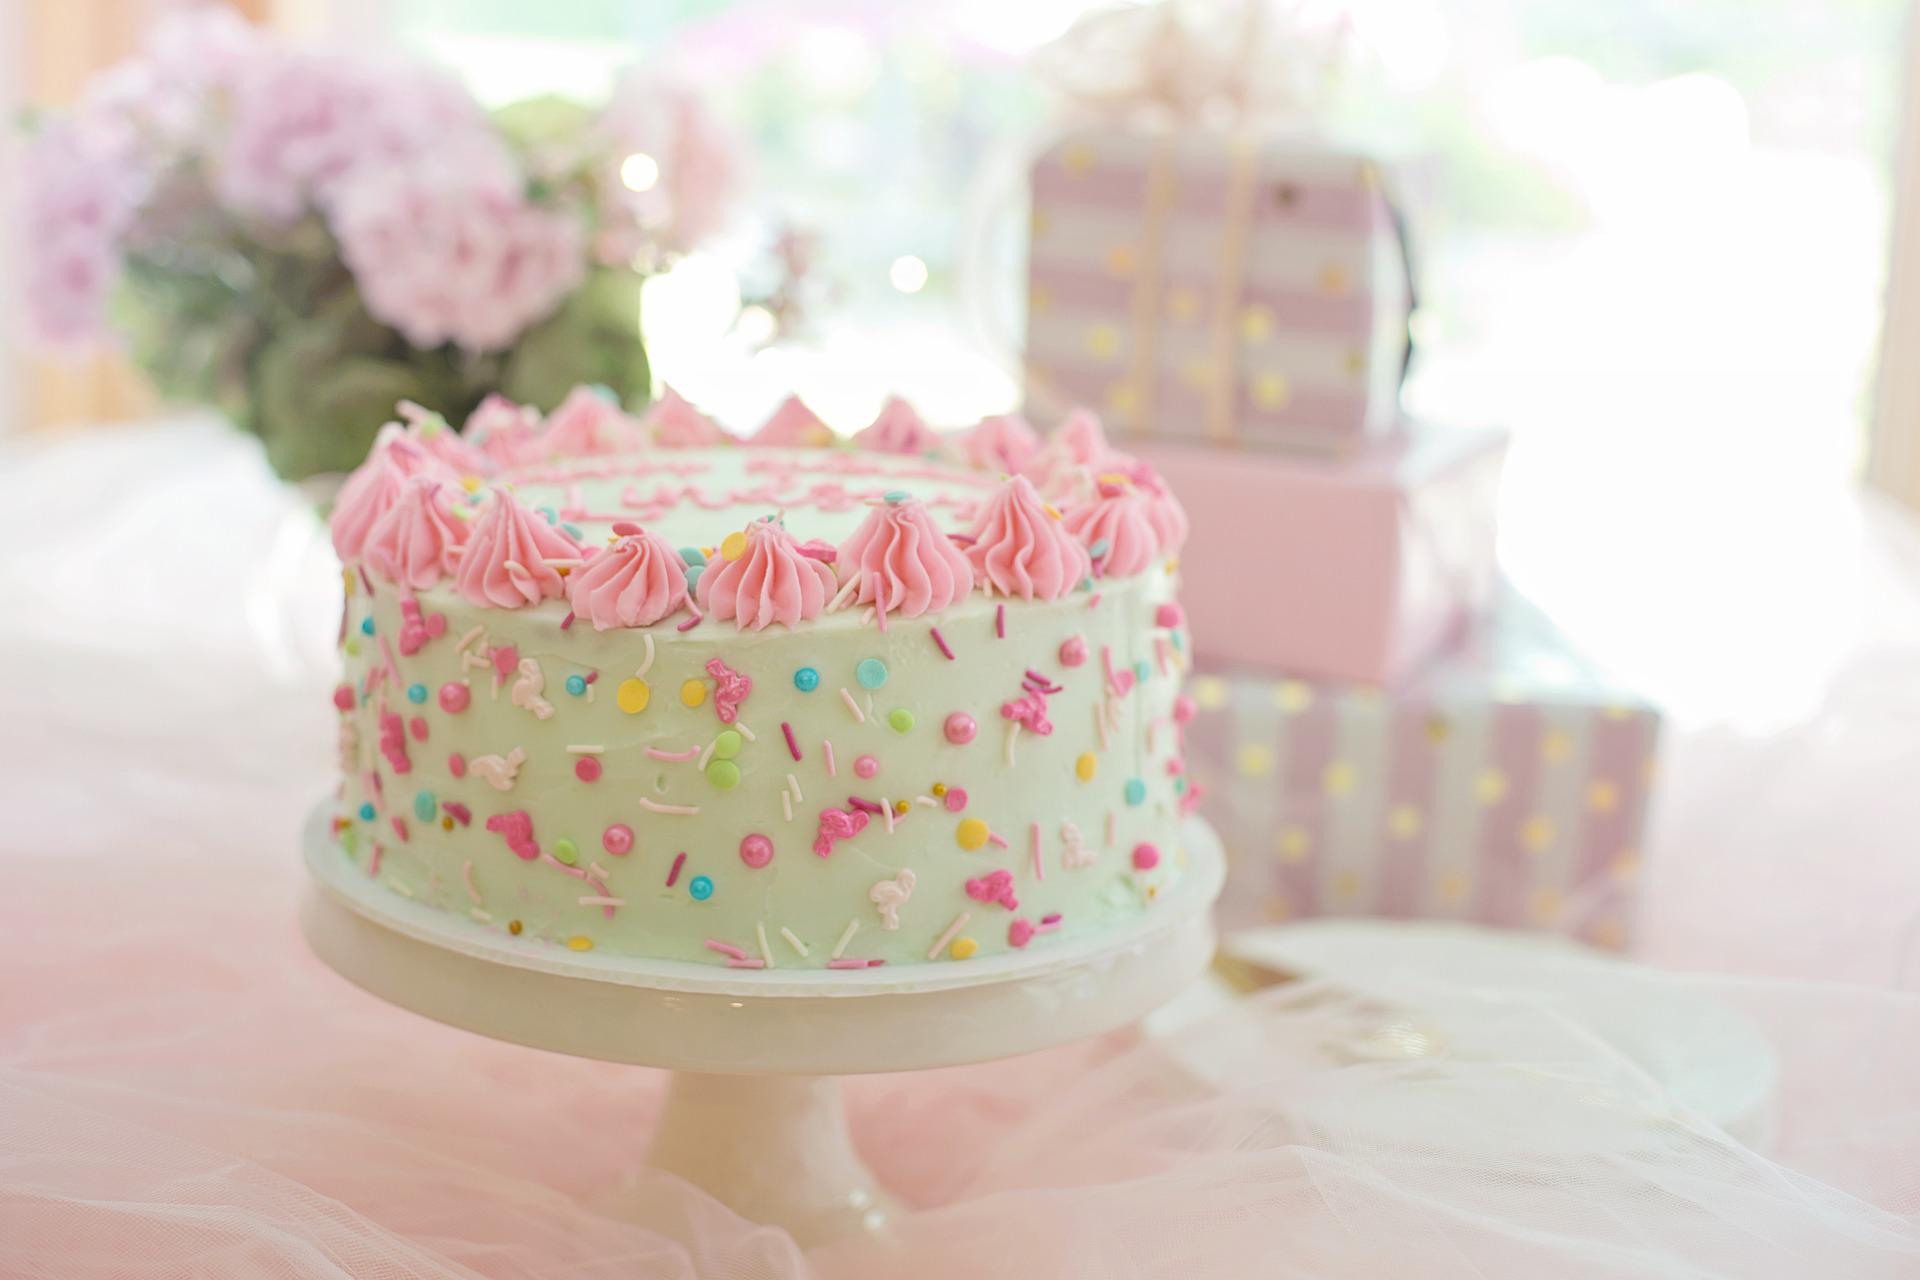 Buy Best Birthday Cakes Online, Order Birthday Cake Online - Whipped.in